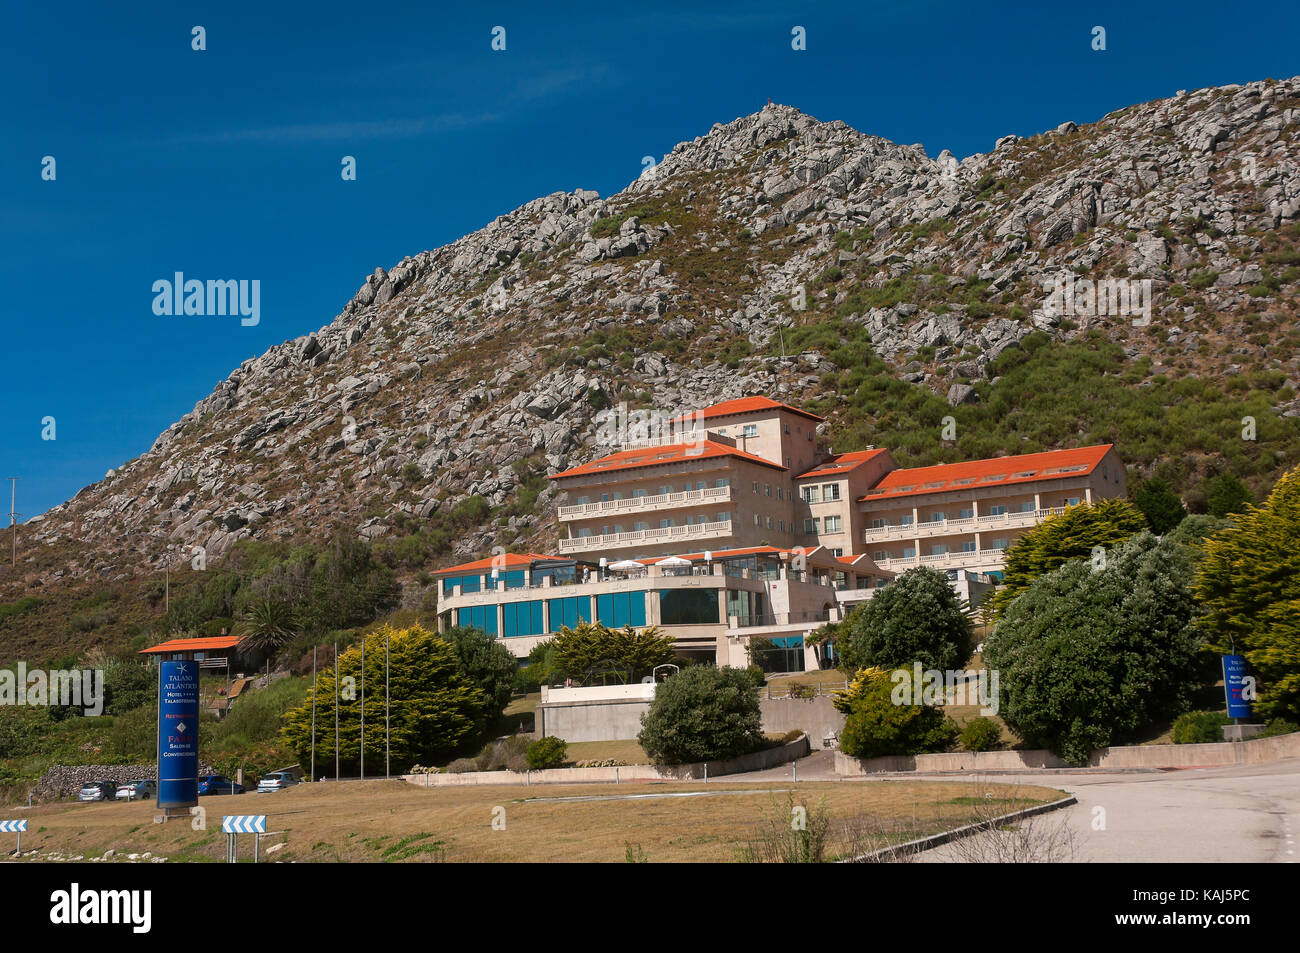 Cape silleiro, Talaso Atlantico Hotel, Bayona, pontevedra province, région de Galice, Espagne, Europe Banque D'Images